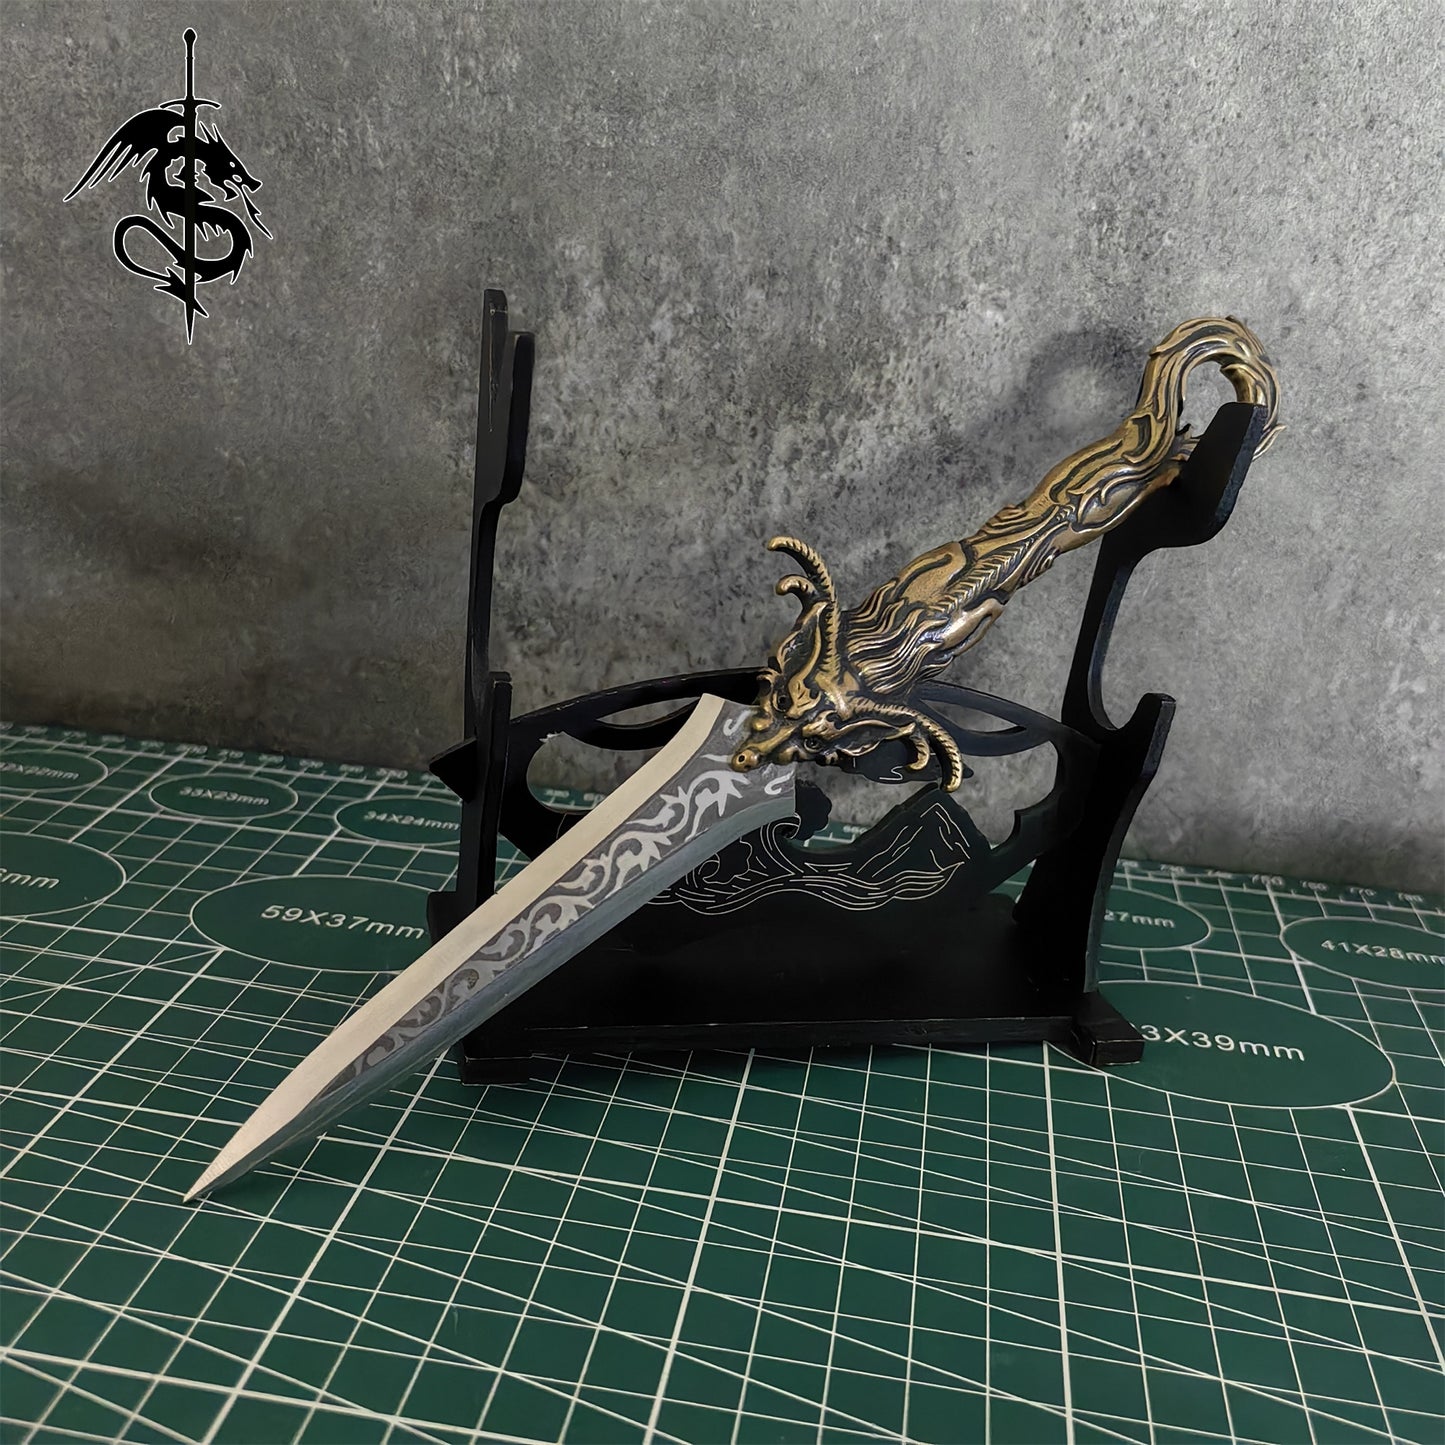 Brass Dragon Tea Knife Hand Forged Short Sword Letter Opener 